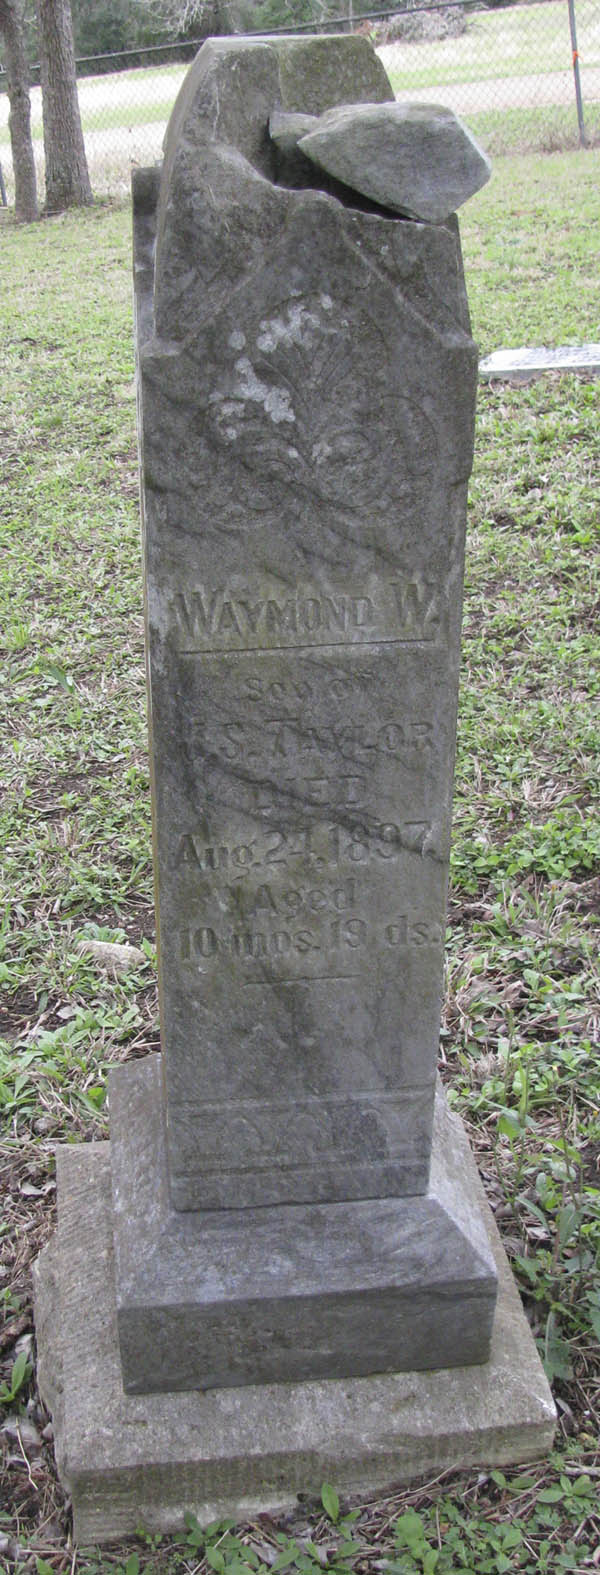 Waymond W. Taylor tombstone